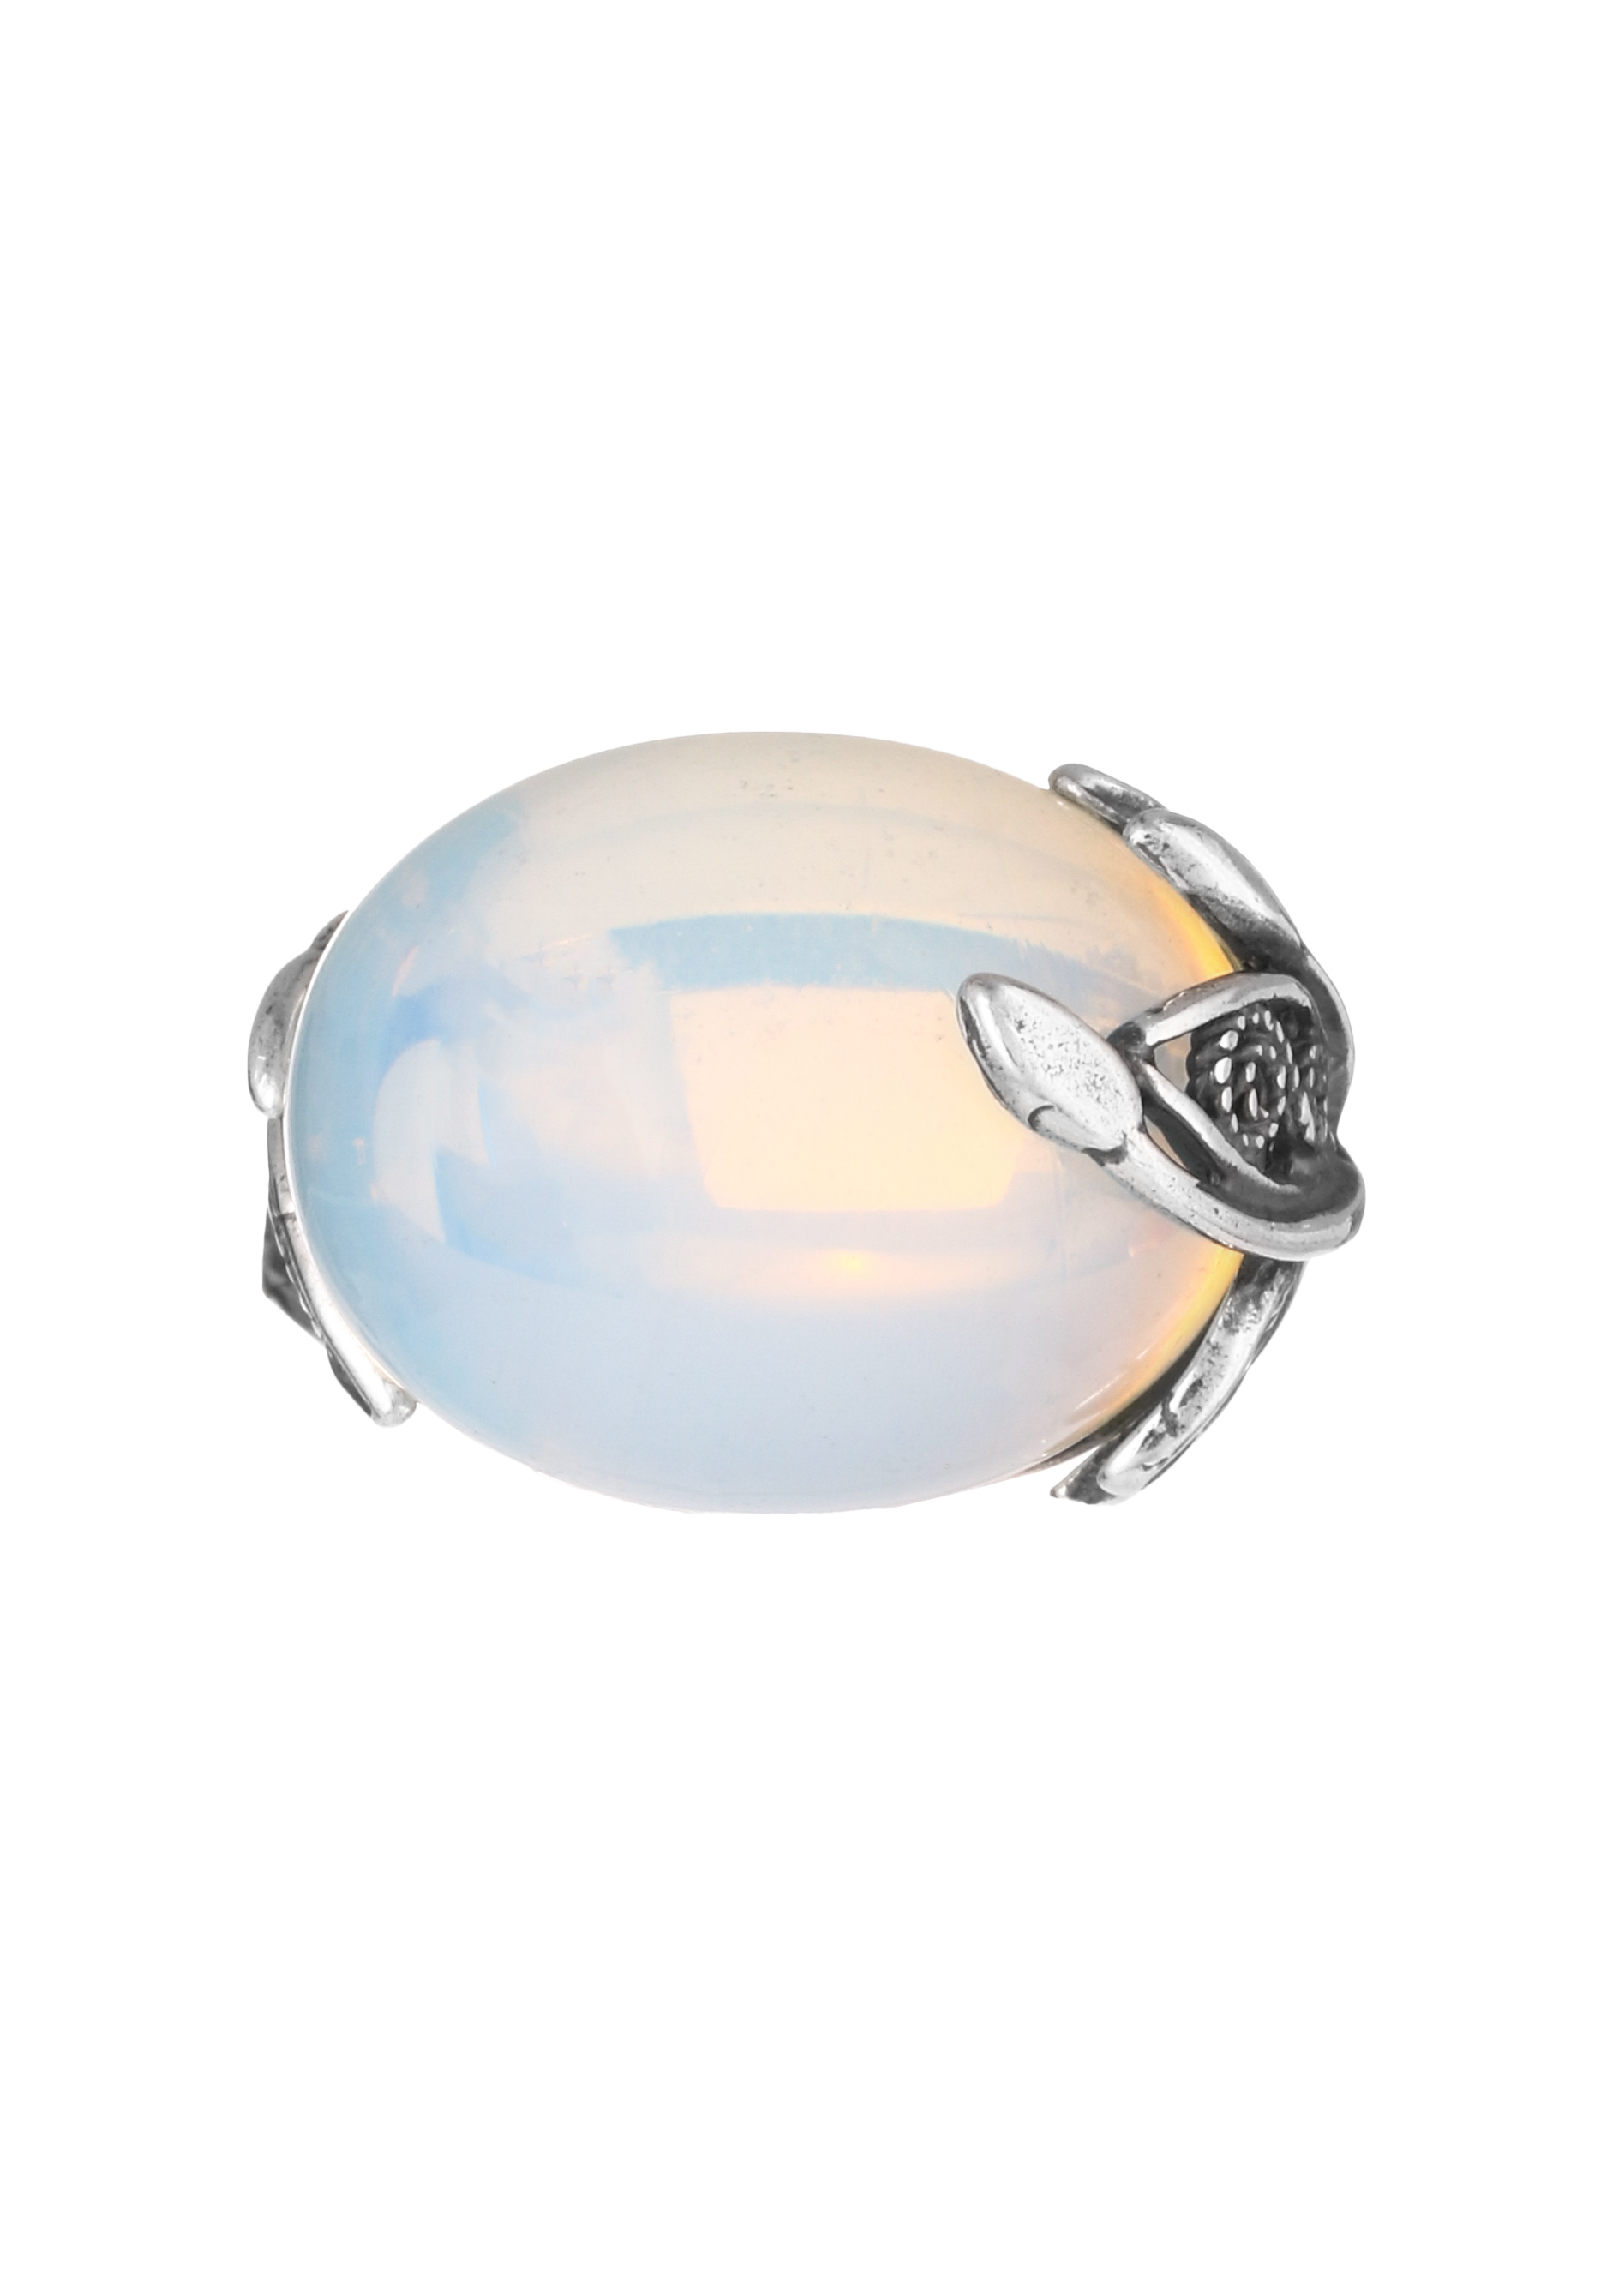 Комплект "Водная стихия" (серьги+кольцо) Silver Star, цвет мультиколор, размер 18 перстень - фото 10